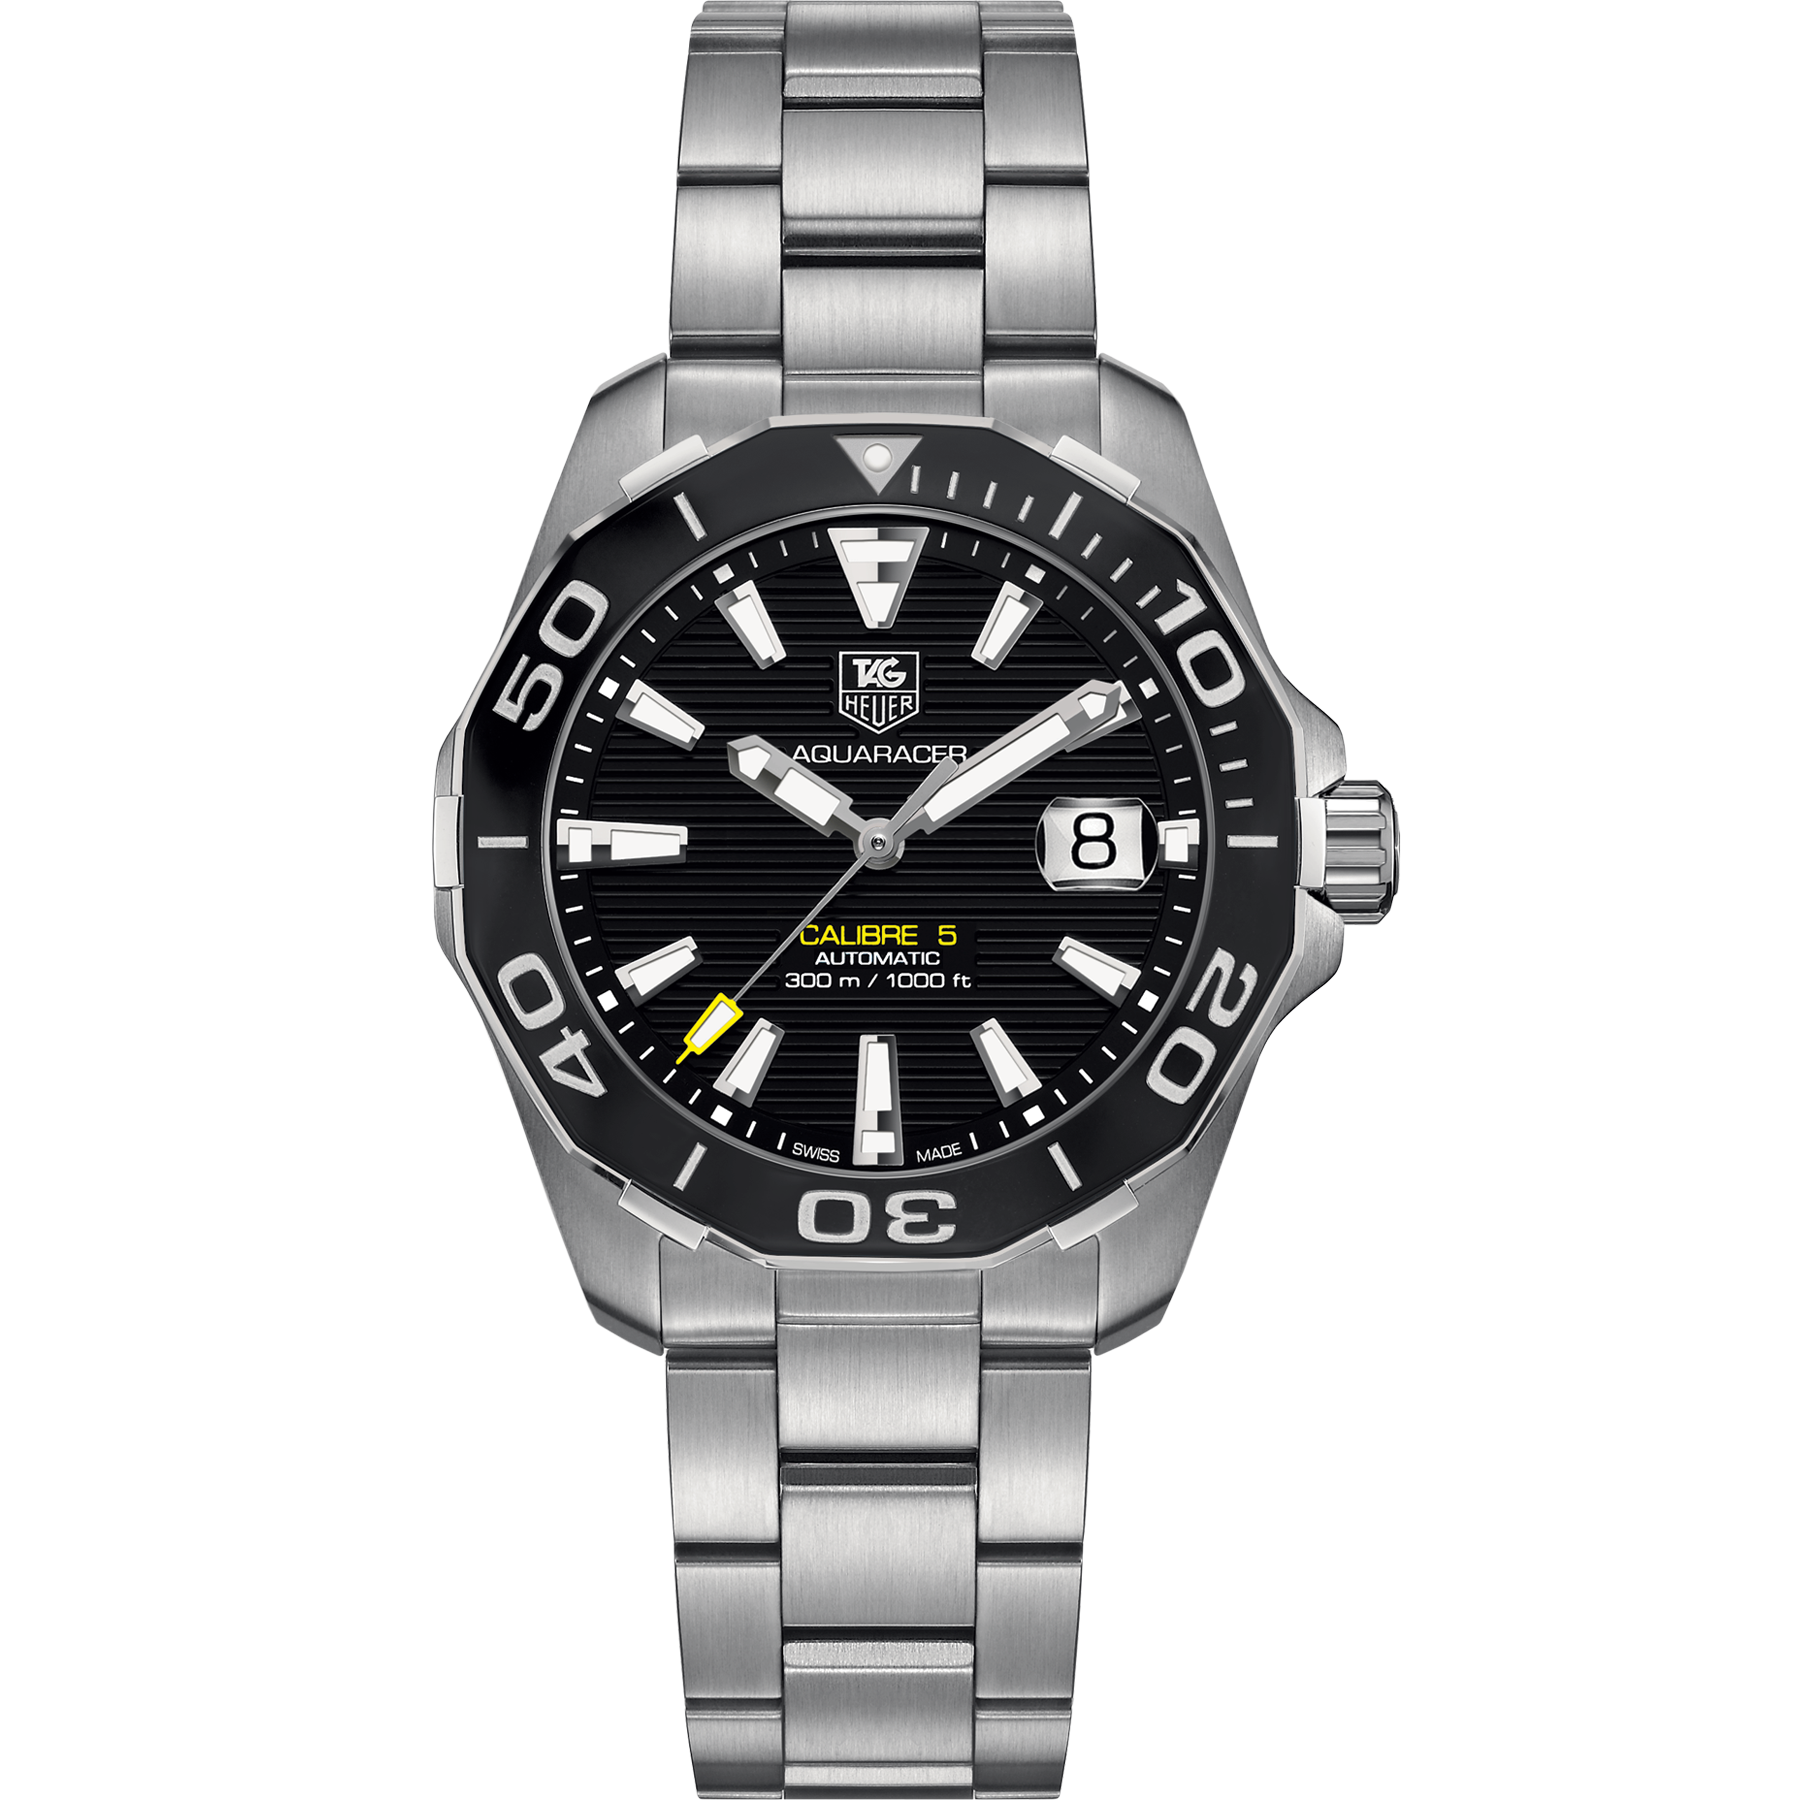 tag aquaracer calibre 5 automatic watch 300 m black